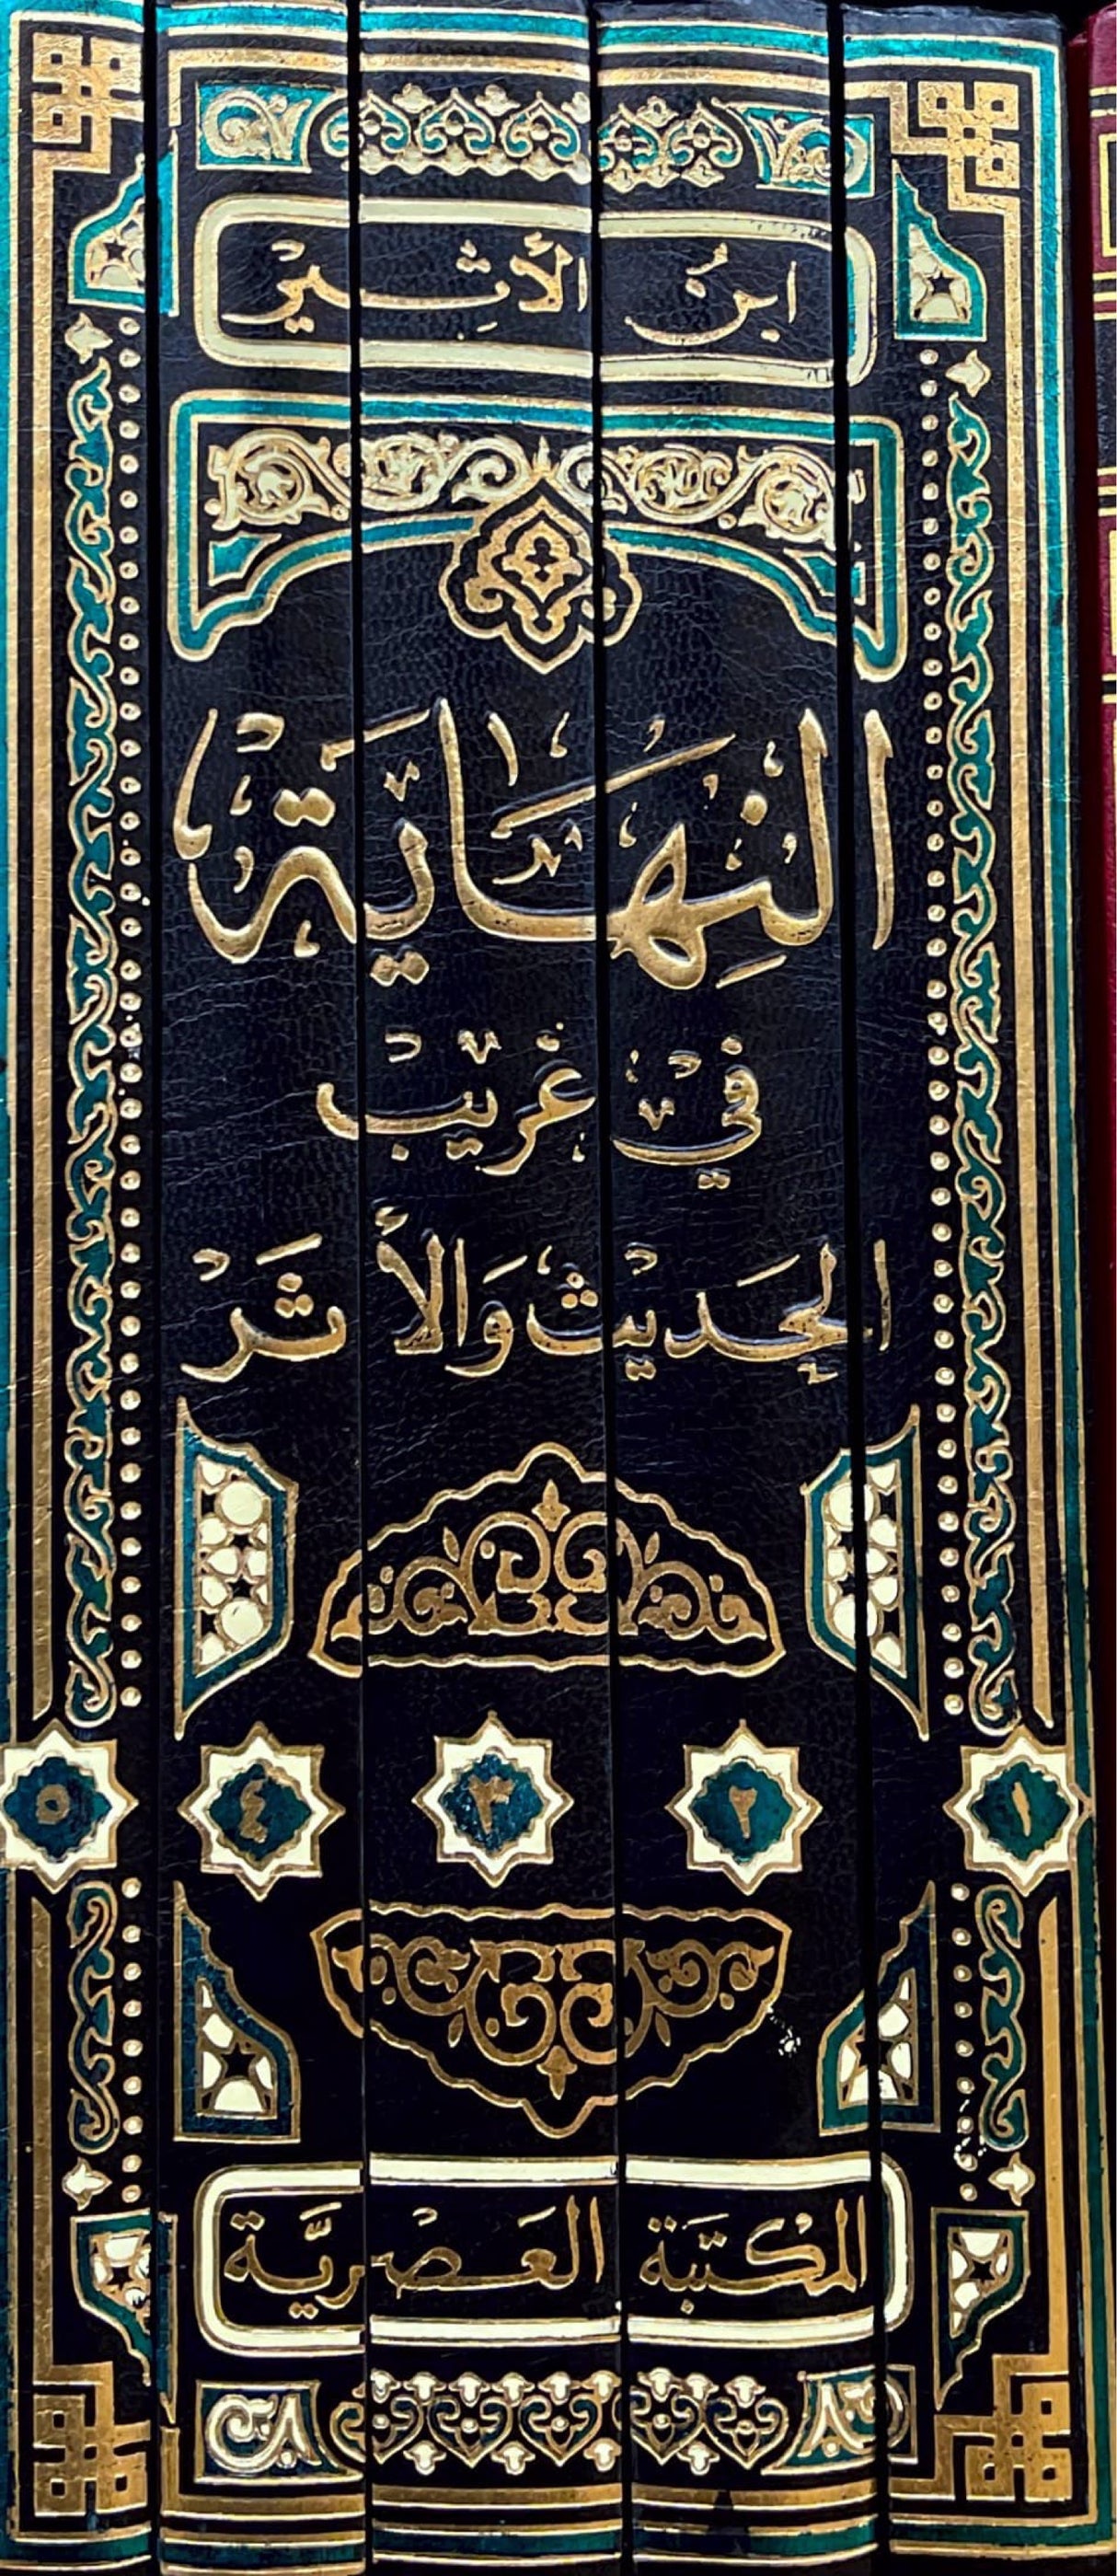 النهاية في غريب الحديث   An Nihaya Fi Ghareeb Al Hadith (Asriya) (5 Volume Set)